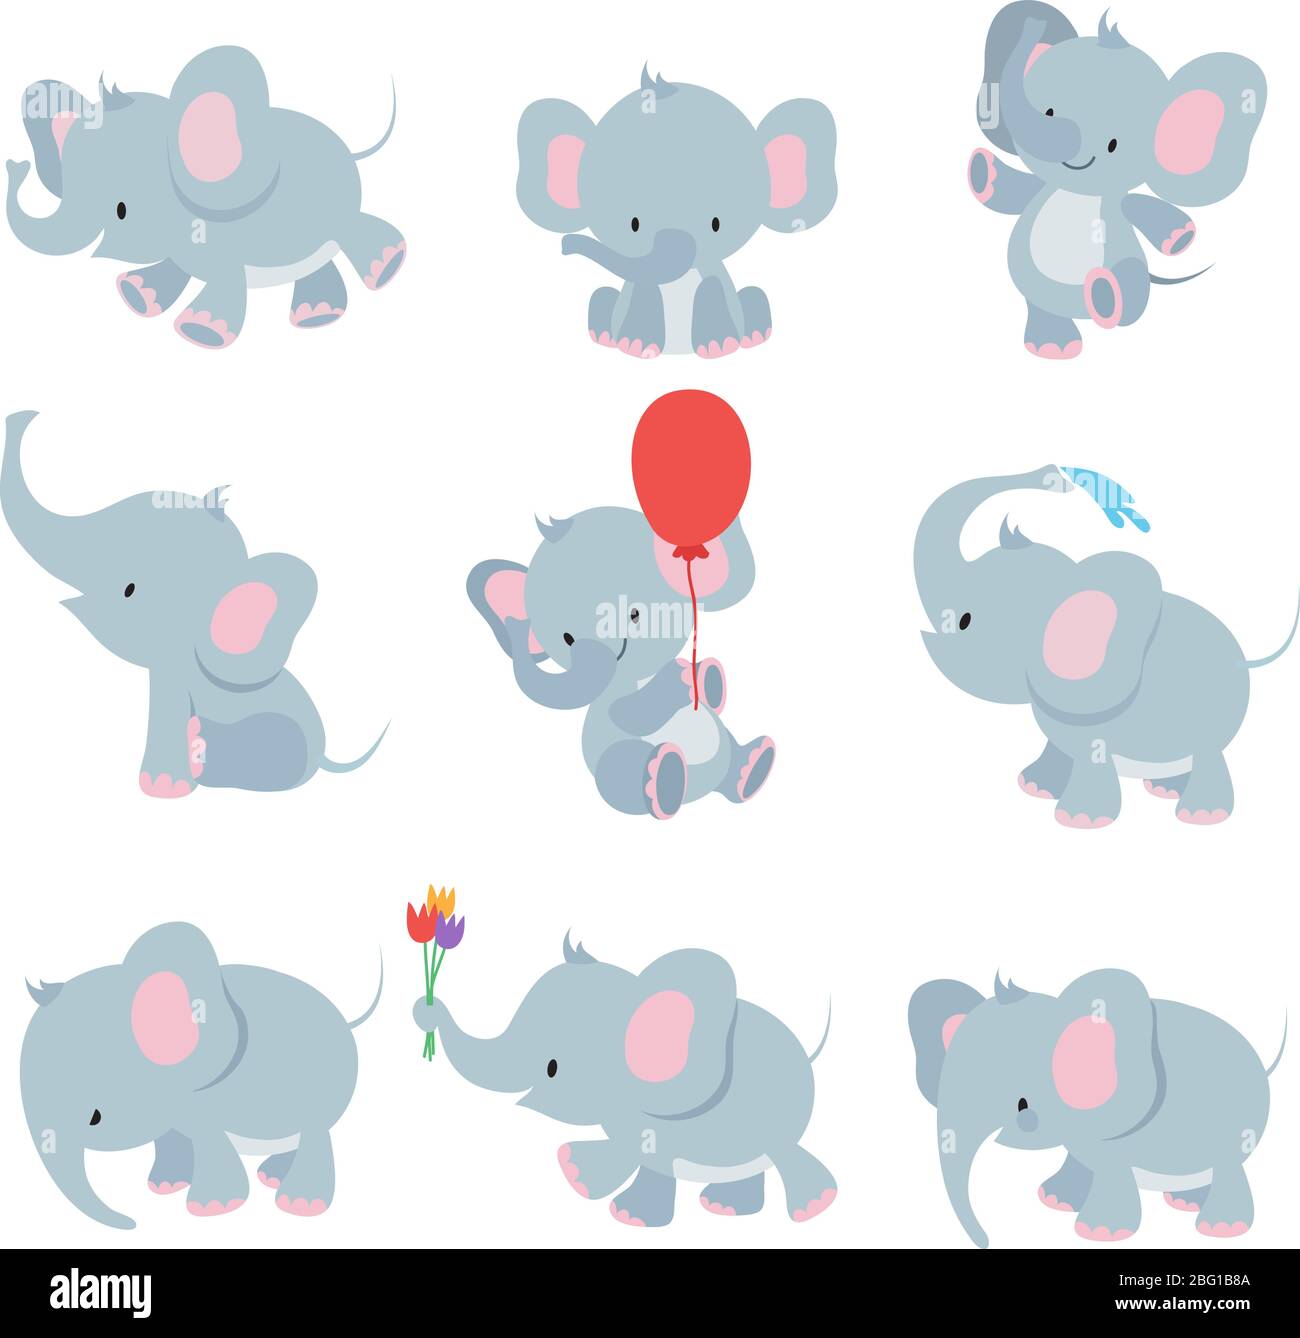 Niedliche Cartoon Baby Elefanten. Tiere afrikanische Safari Tiere Vektor-Set. Elefant afrikanischen Cartoon, glücklich freundlich Tier Illustration Stock Vektor